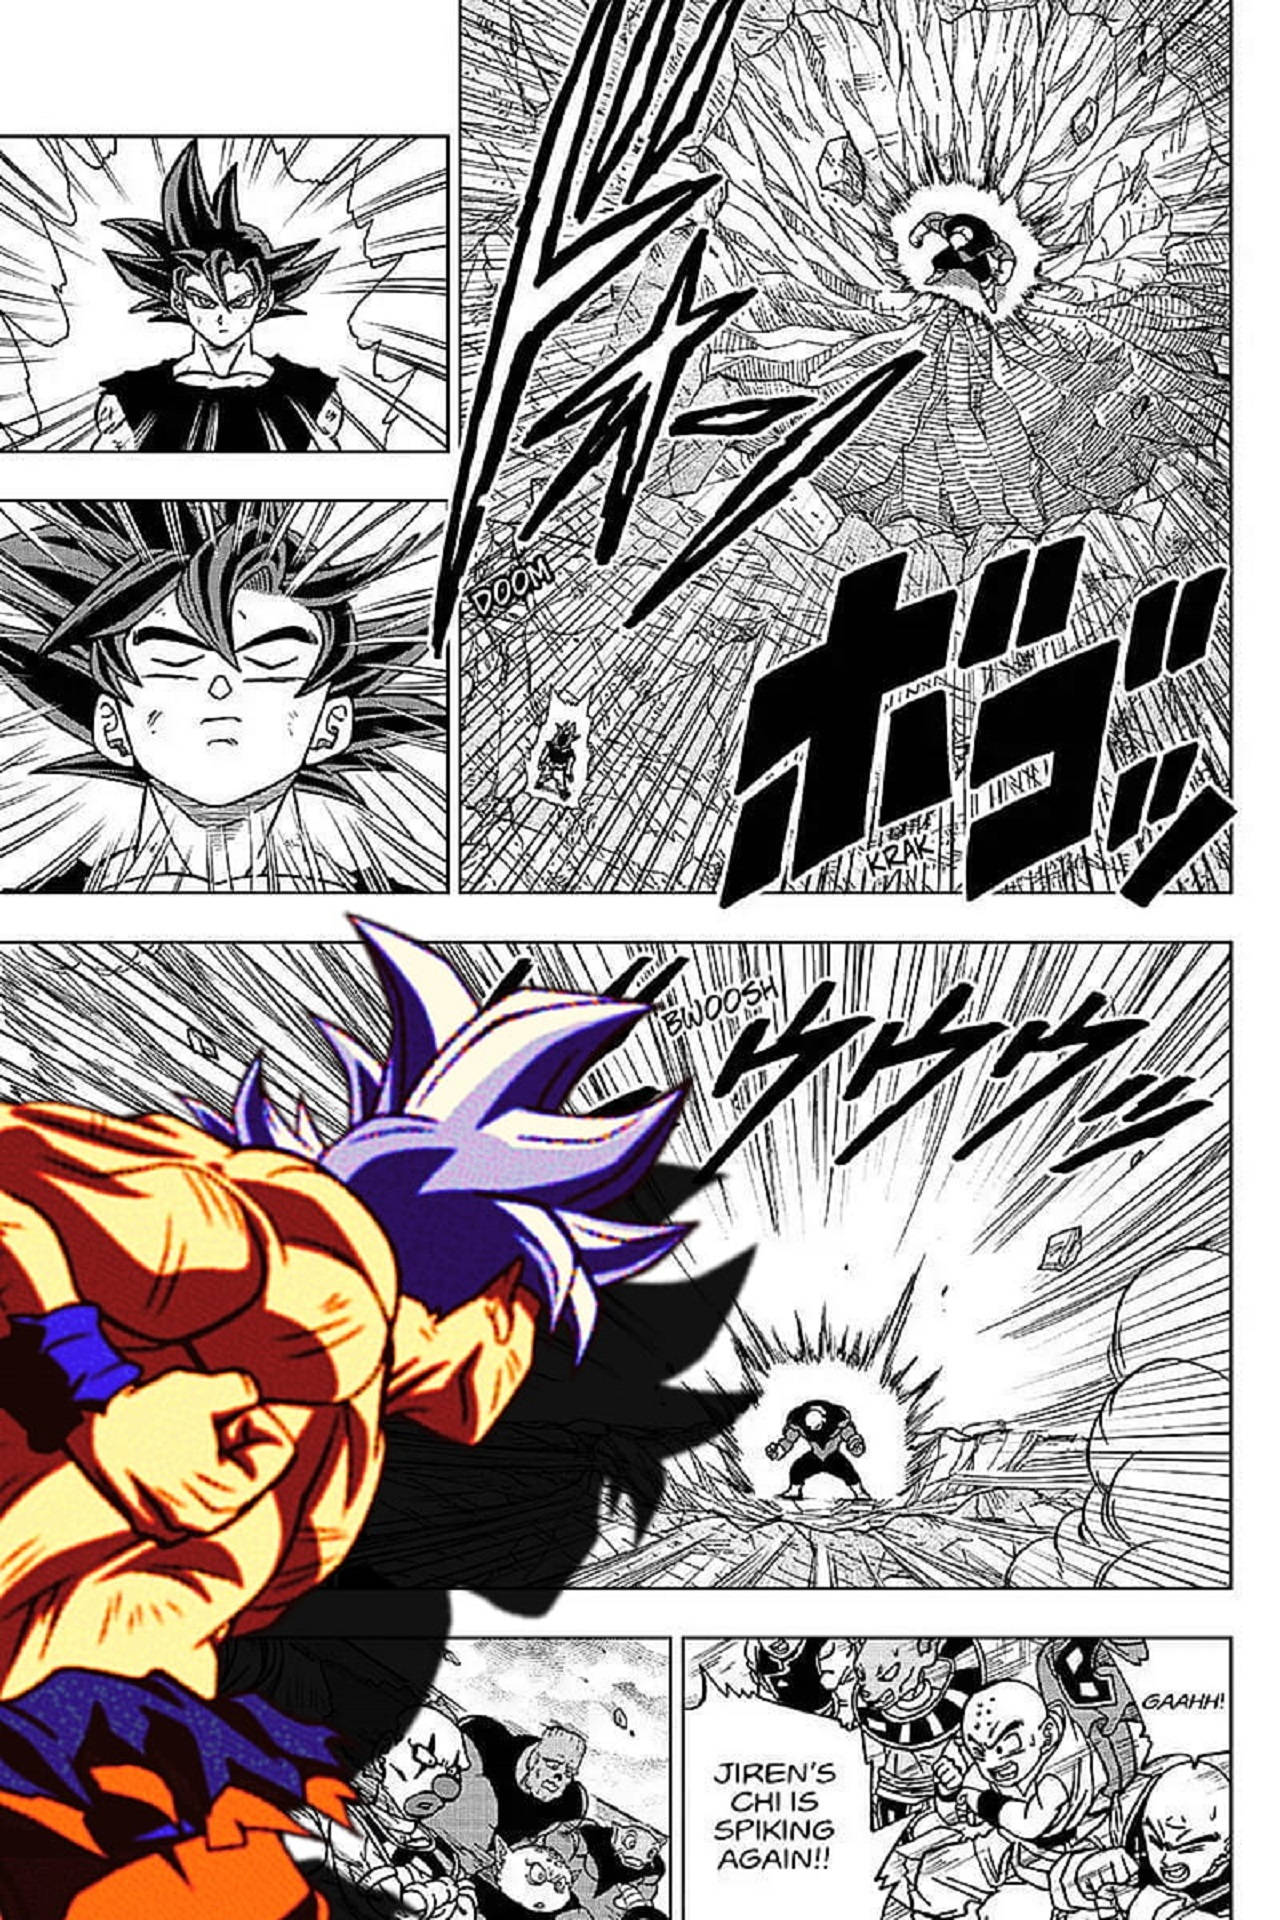 Dragon Ball Manga Panel